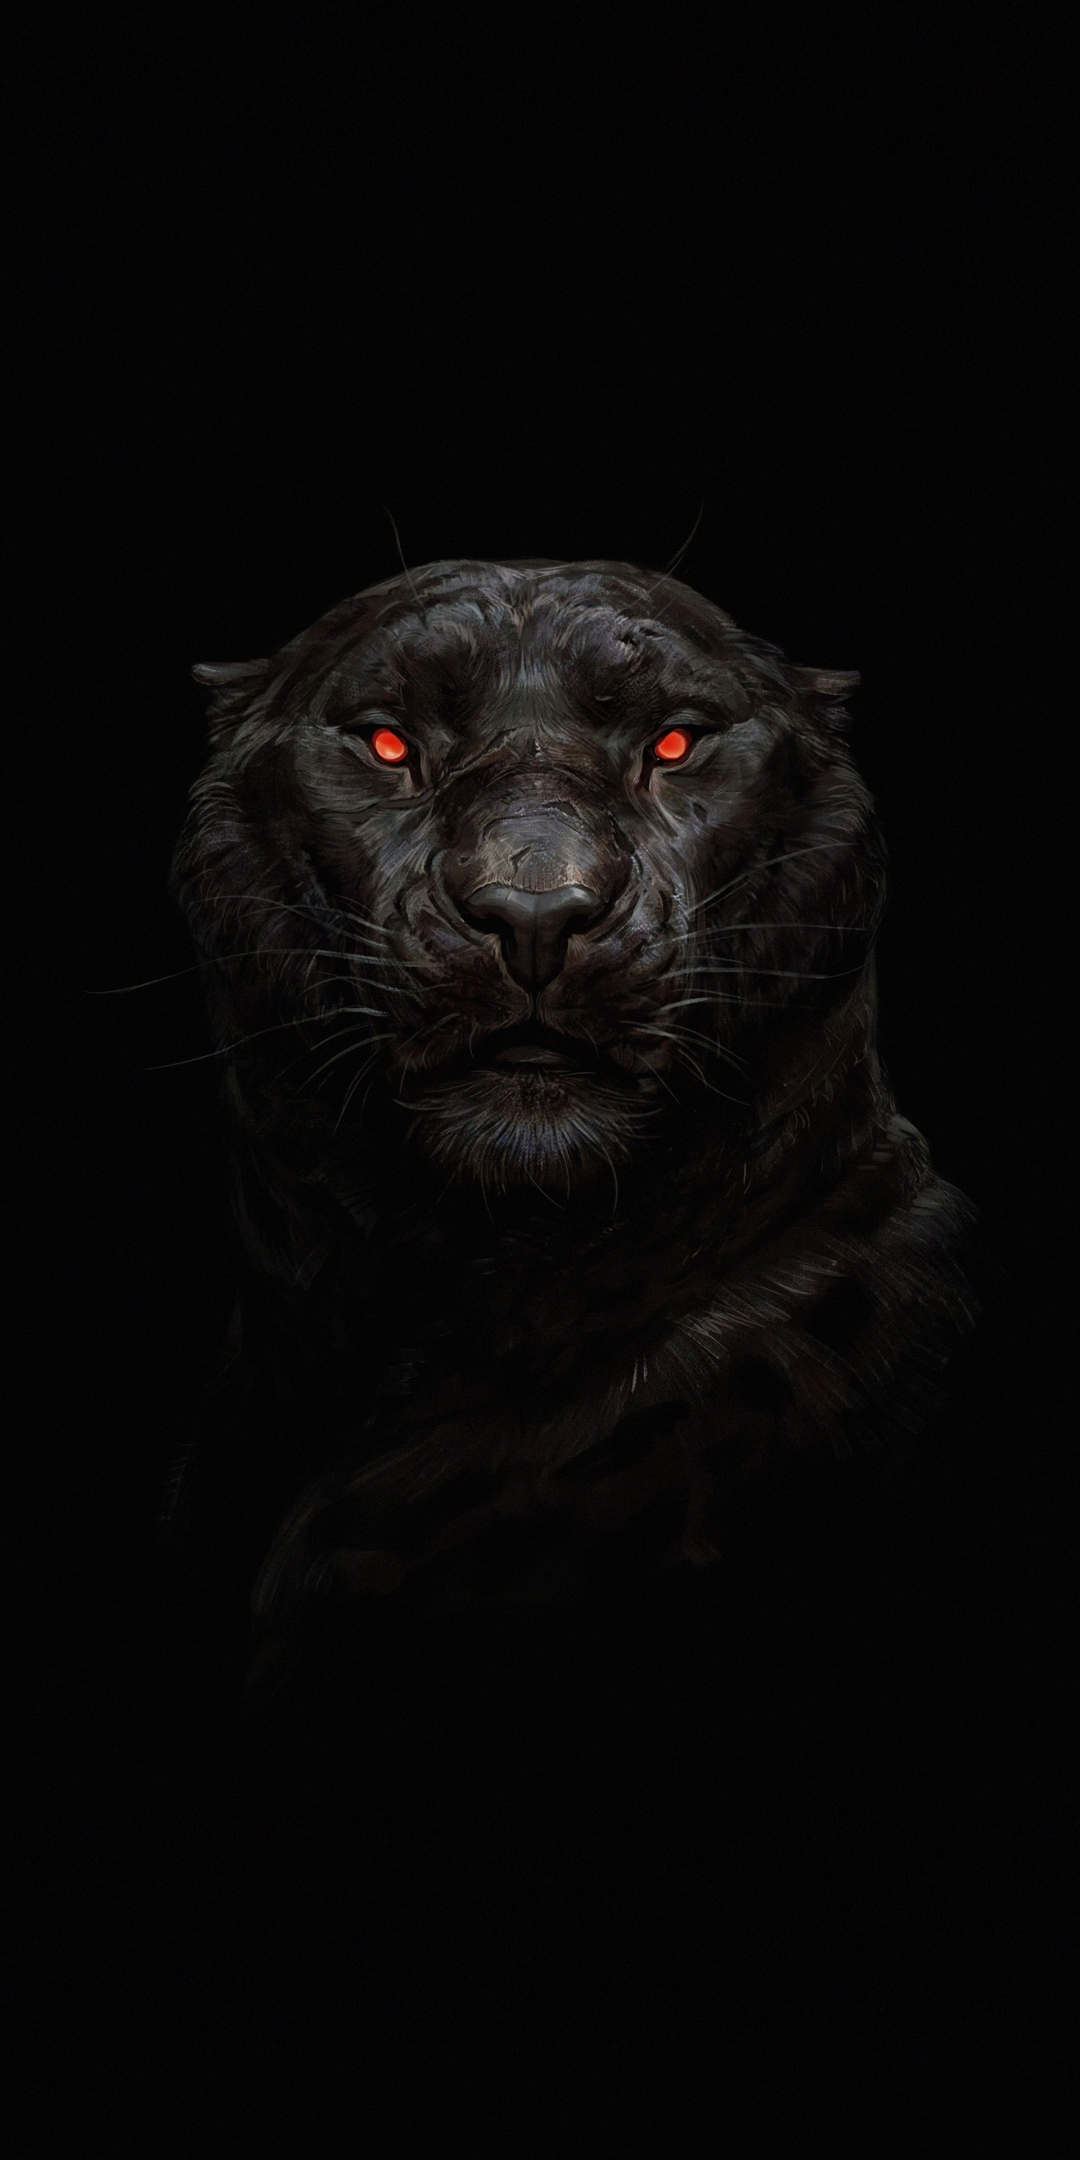 Tiger, glowing red eye, minimal, dark, 1080x2160 wallpaper